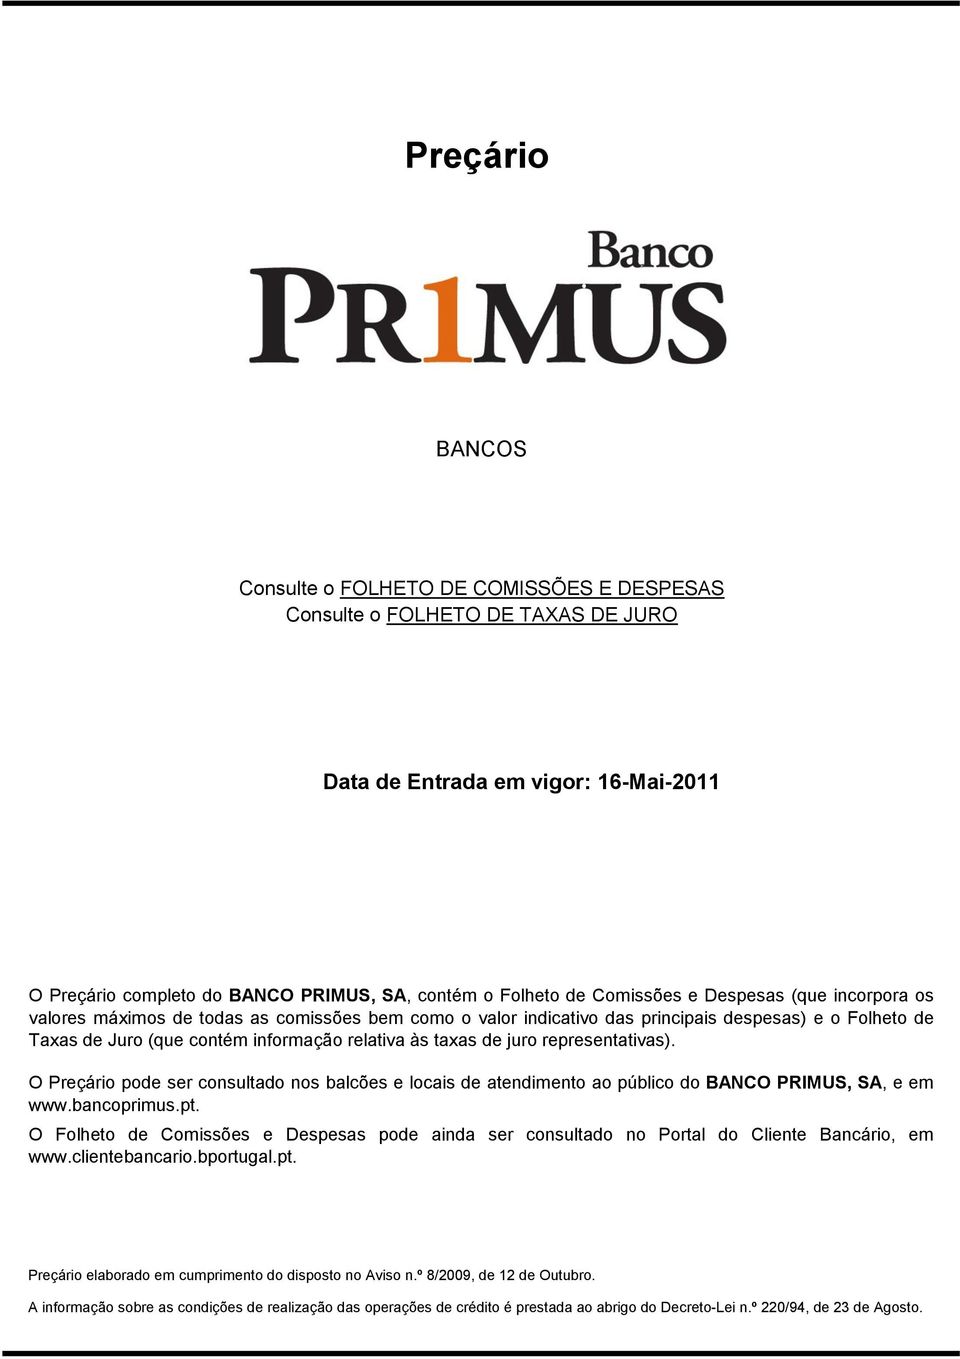 representativas). O Preçário pode ser consultado nos balcões e locais de atendimento ao público do BANCO PRIMUS, SA, e em www.bancoprimus.pt.